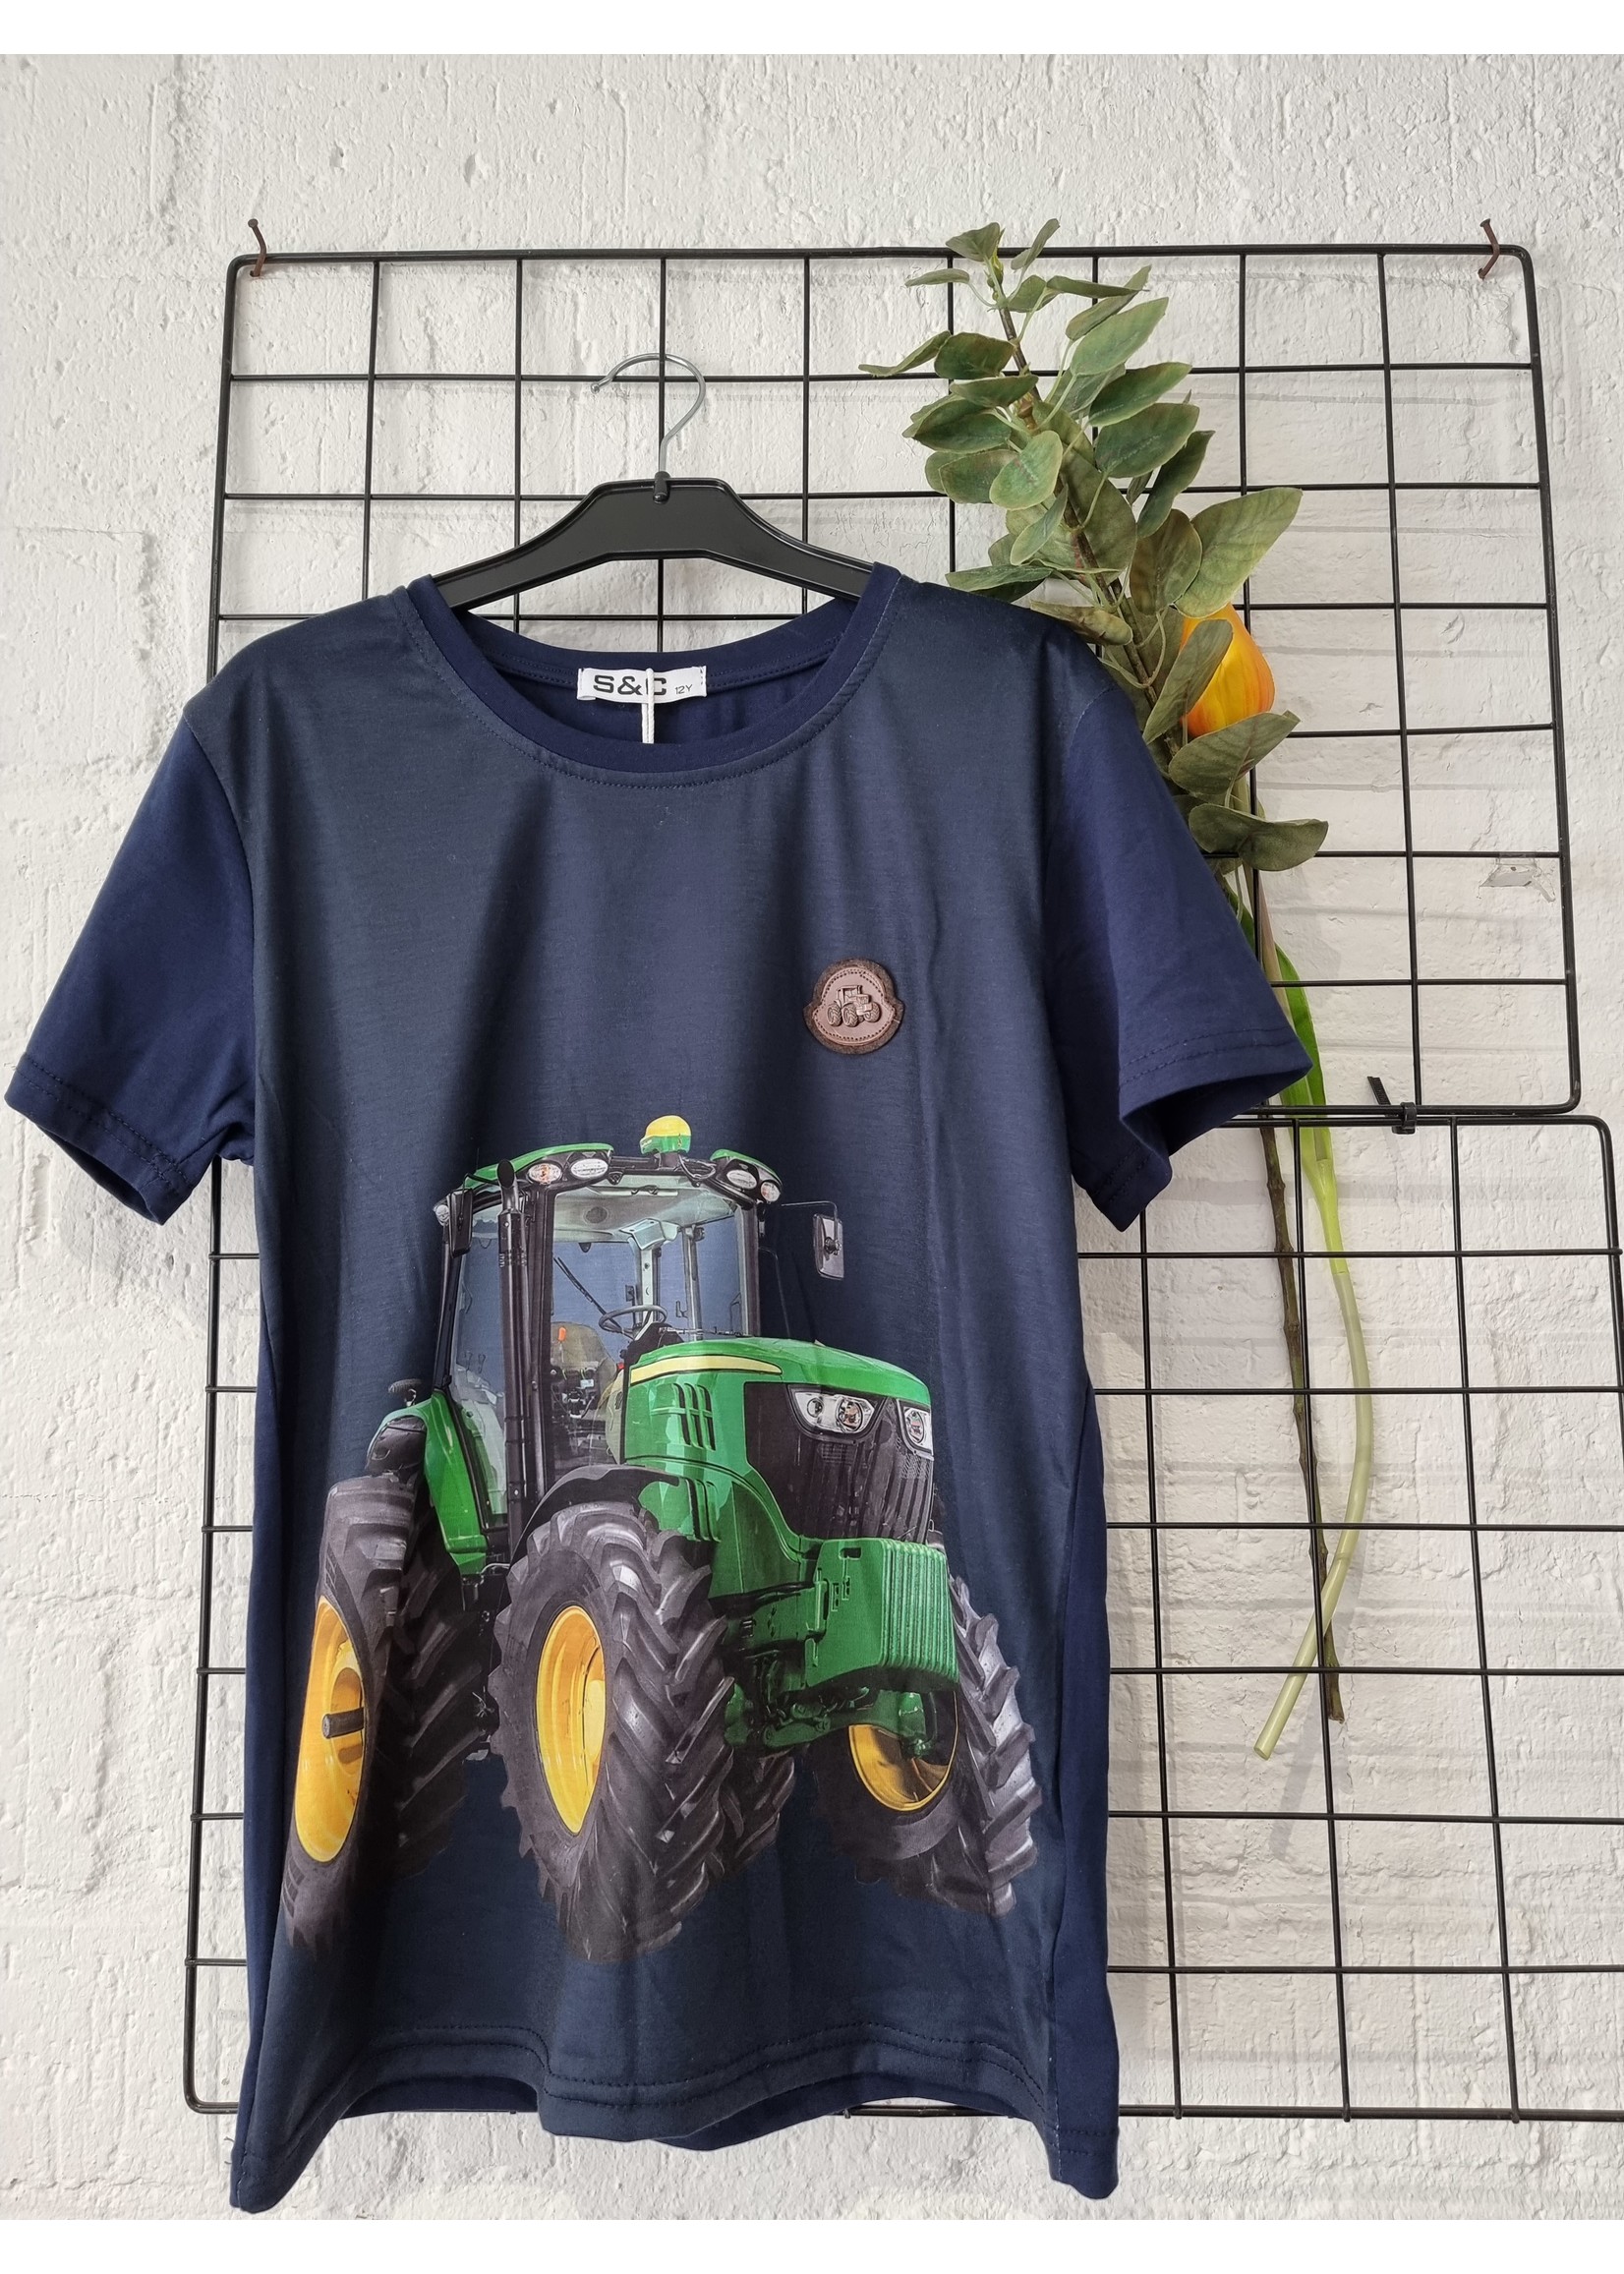 S&C Tractor shirt John Deere